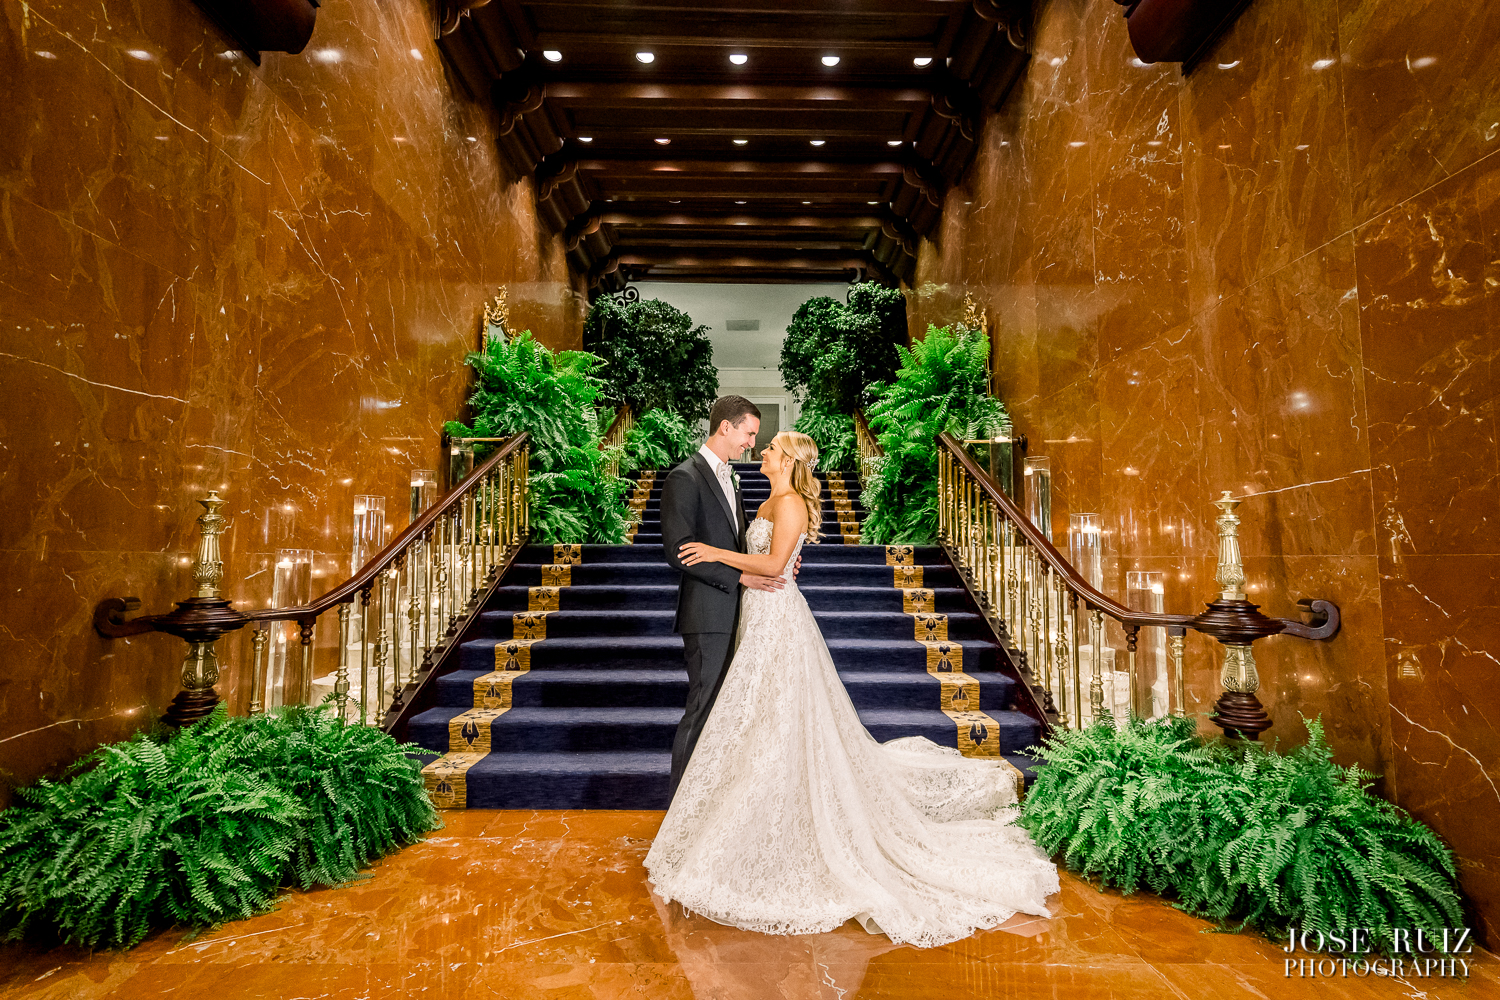 Jose Ruiz Photography- Carolina & Gabo Wedding Day-0192.jpg